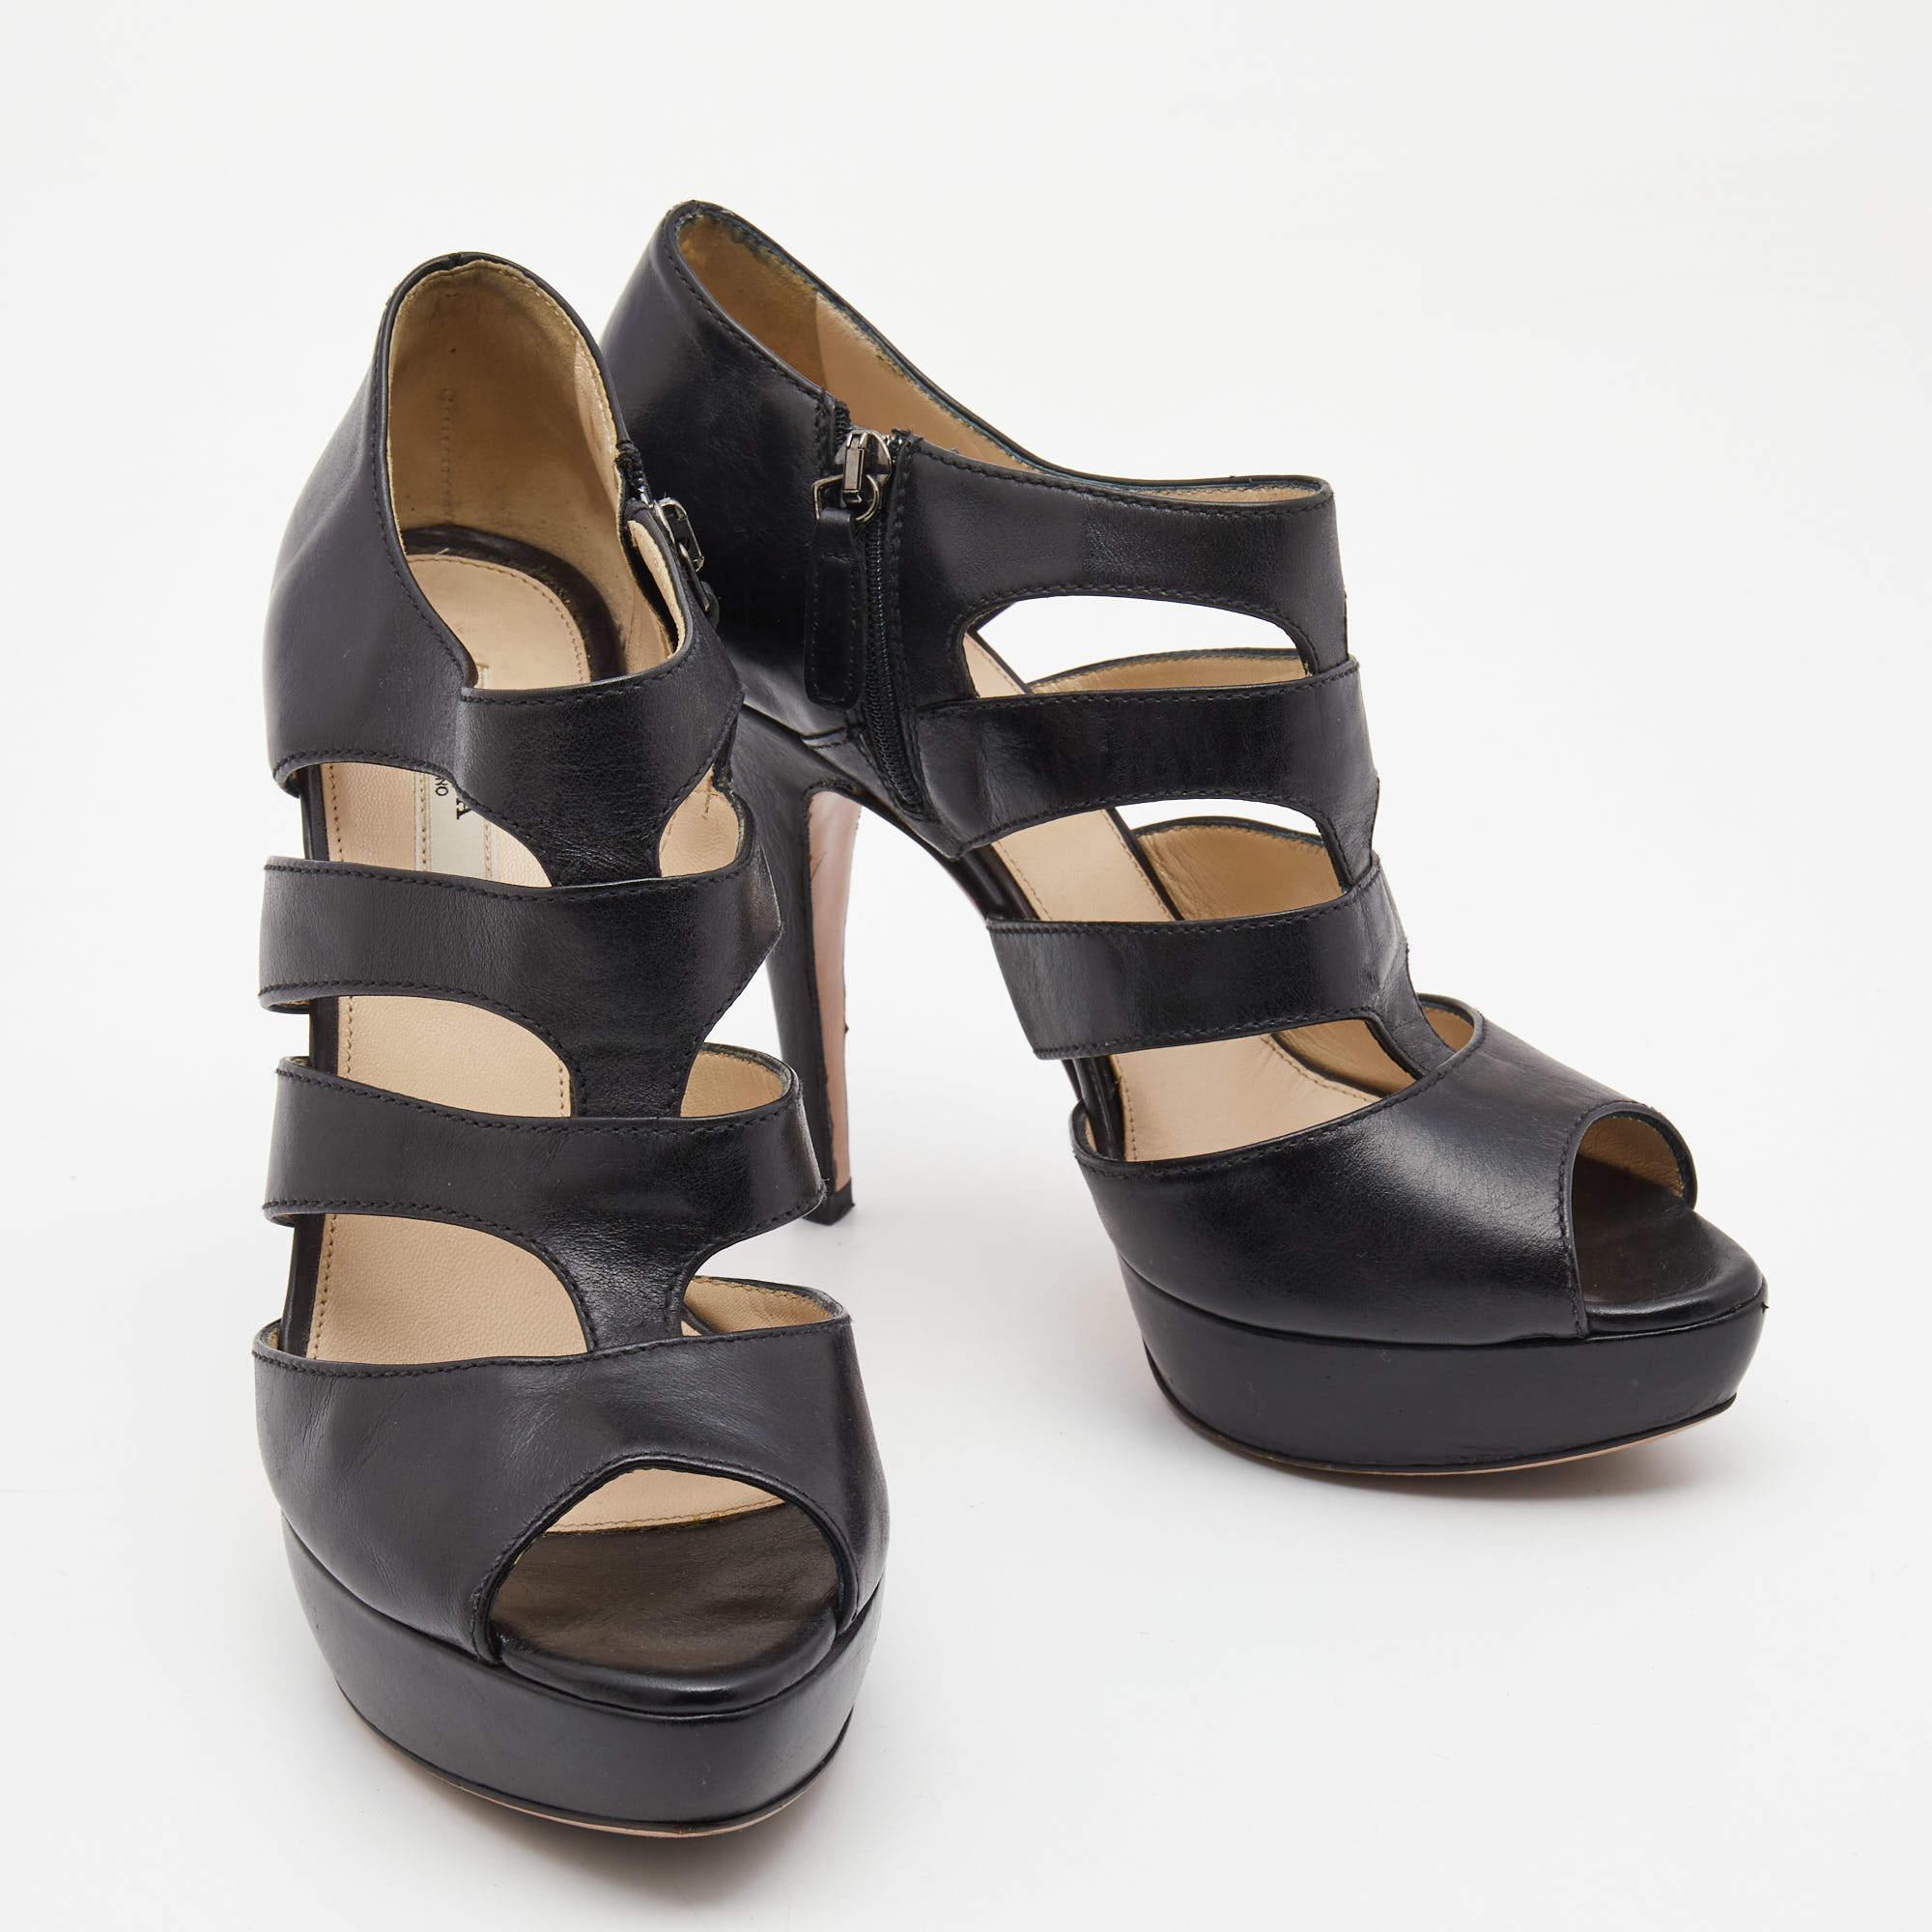 Prada Black Leather Strappy Sandals Size 39.5 In Good Condition For Sale In Dubai, Al Qouz 2